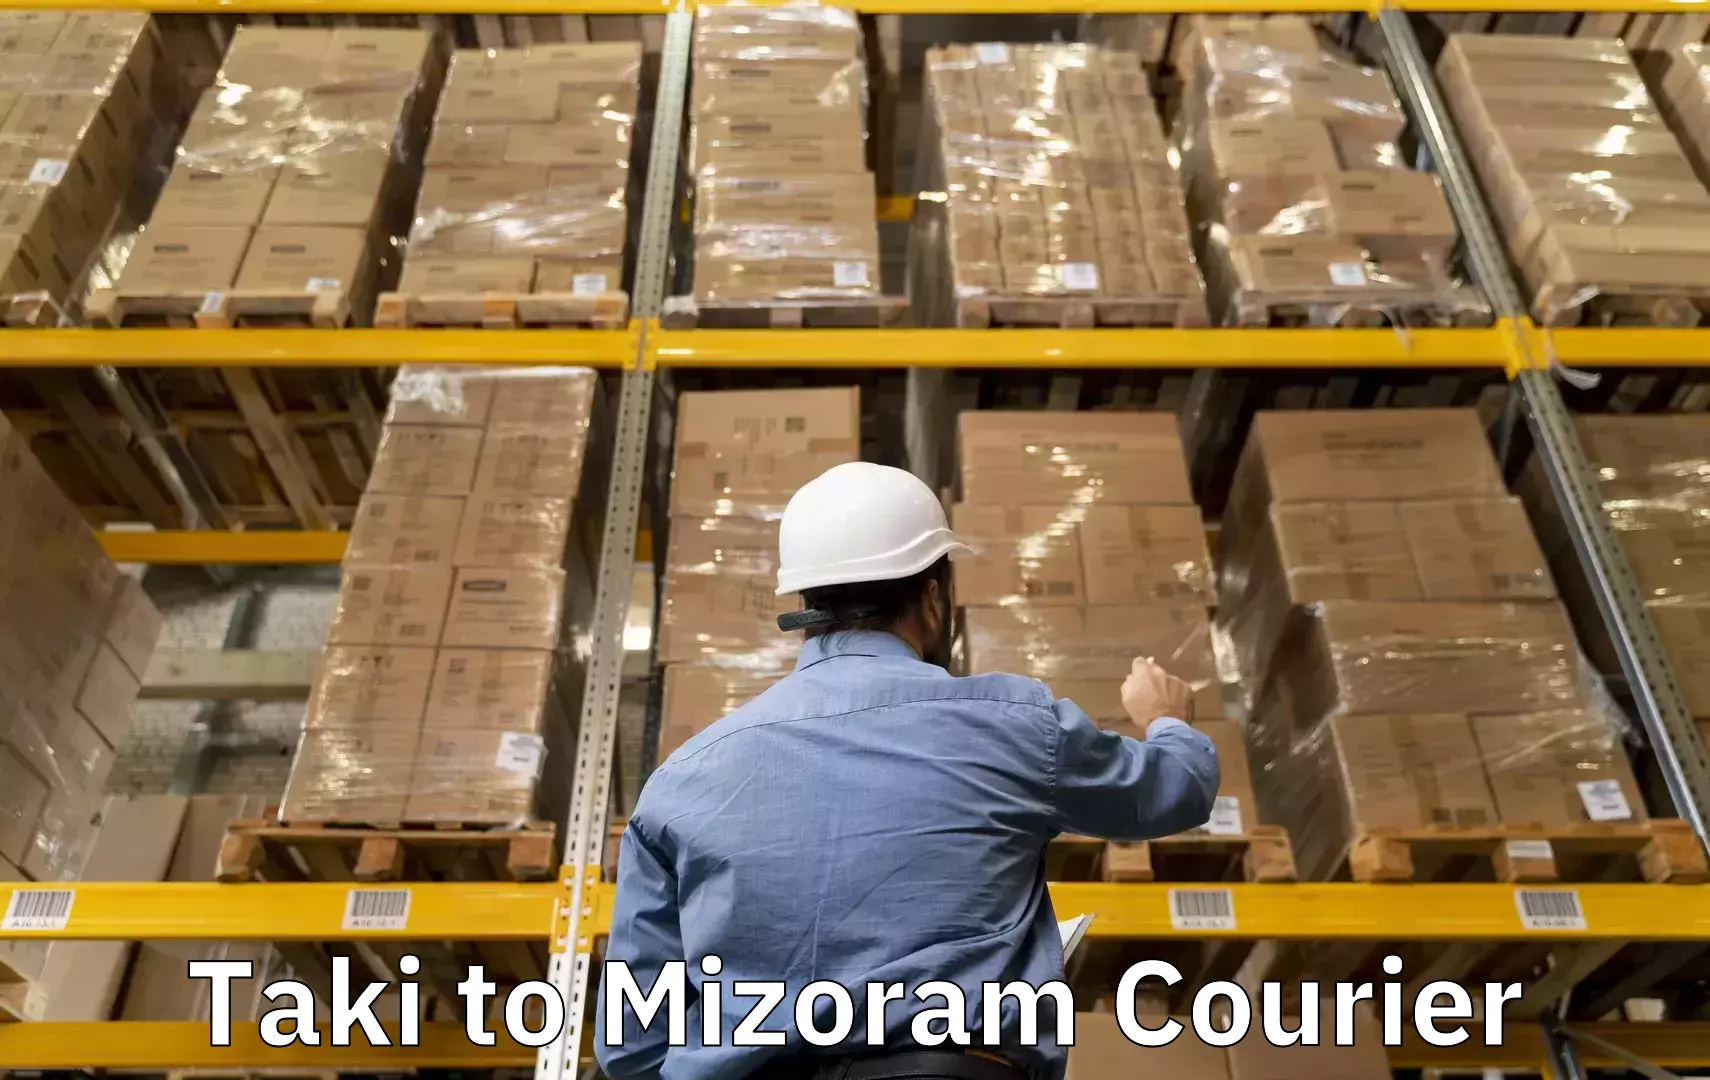 Baggage courier optimization in Taki to Mizoram